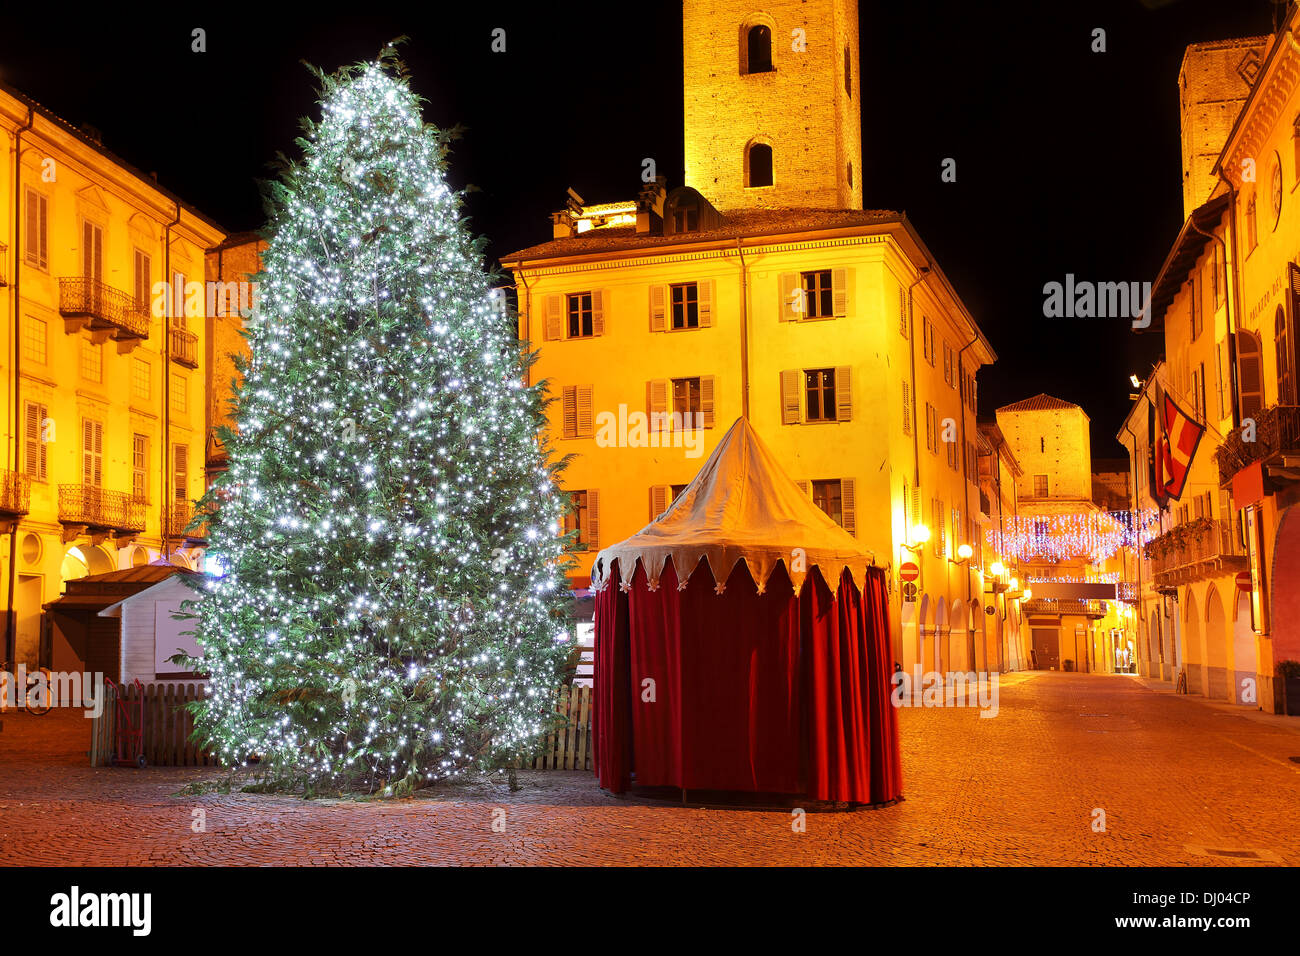 Grande Natale albero illuminato sulla piazza della città davanti di antiche torri presso il centro storico di Alba, Italia settentrionale. Foto Stock